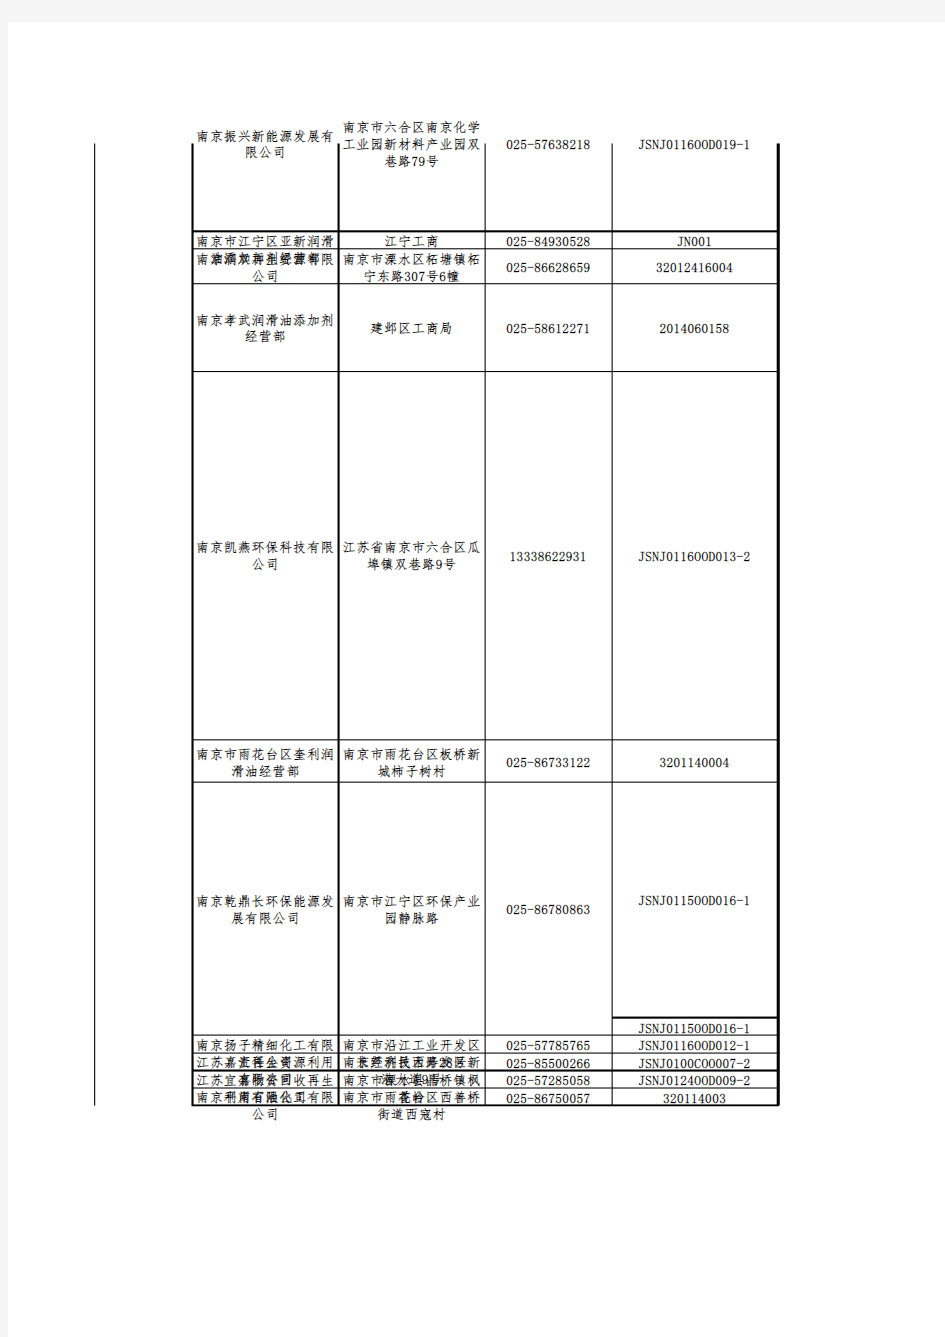 江苏省危险废物经营许可证颁发情况表(截至2018年1月)